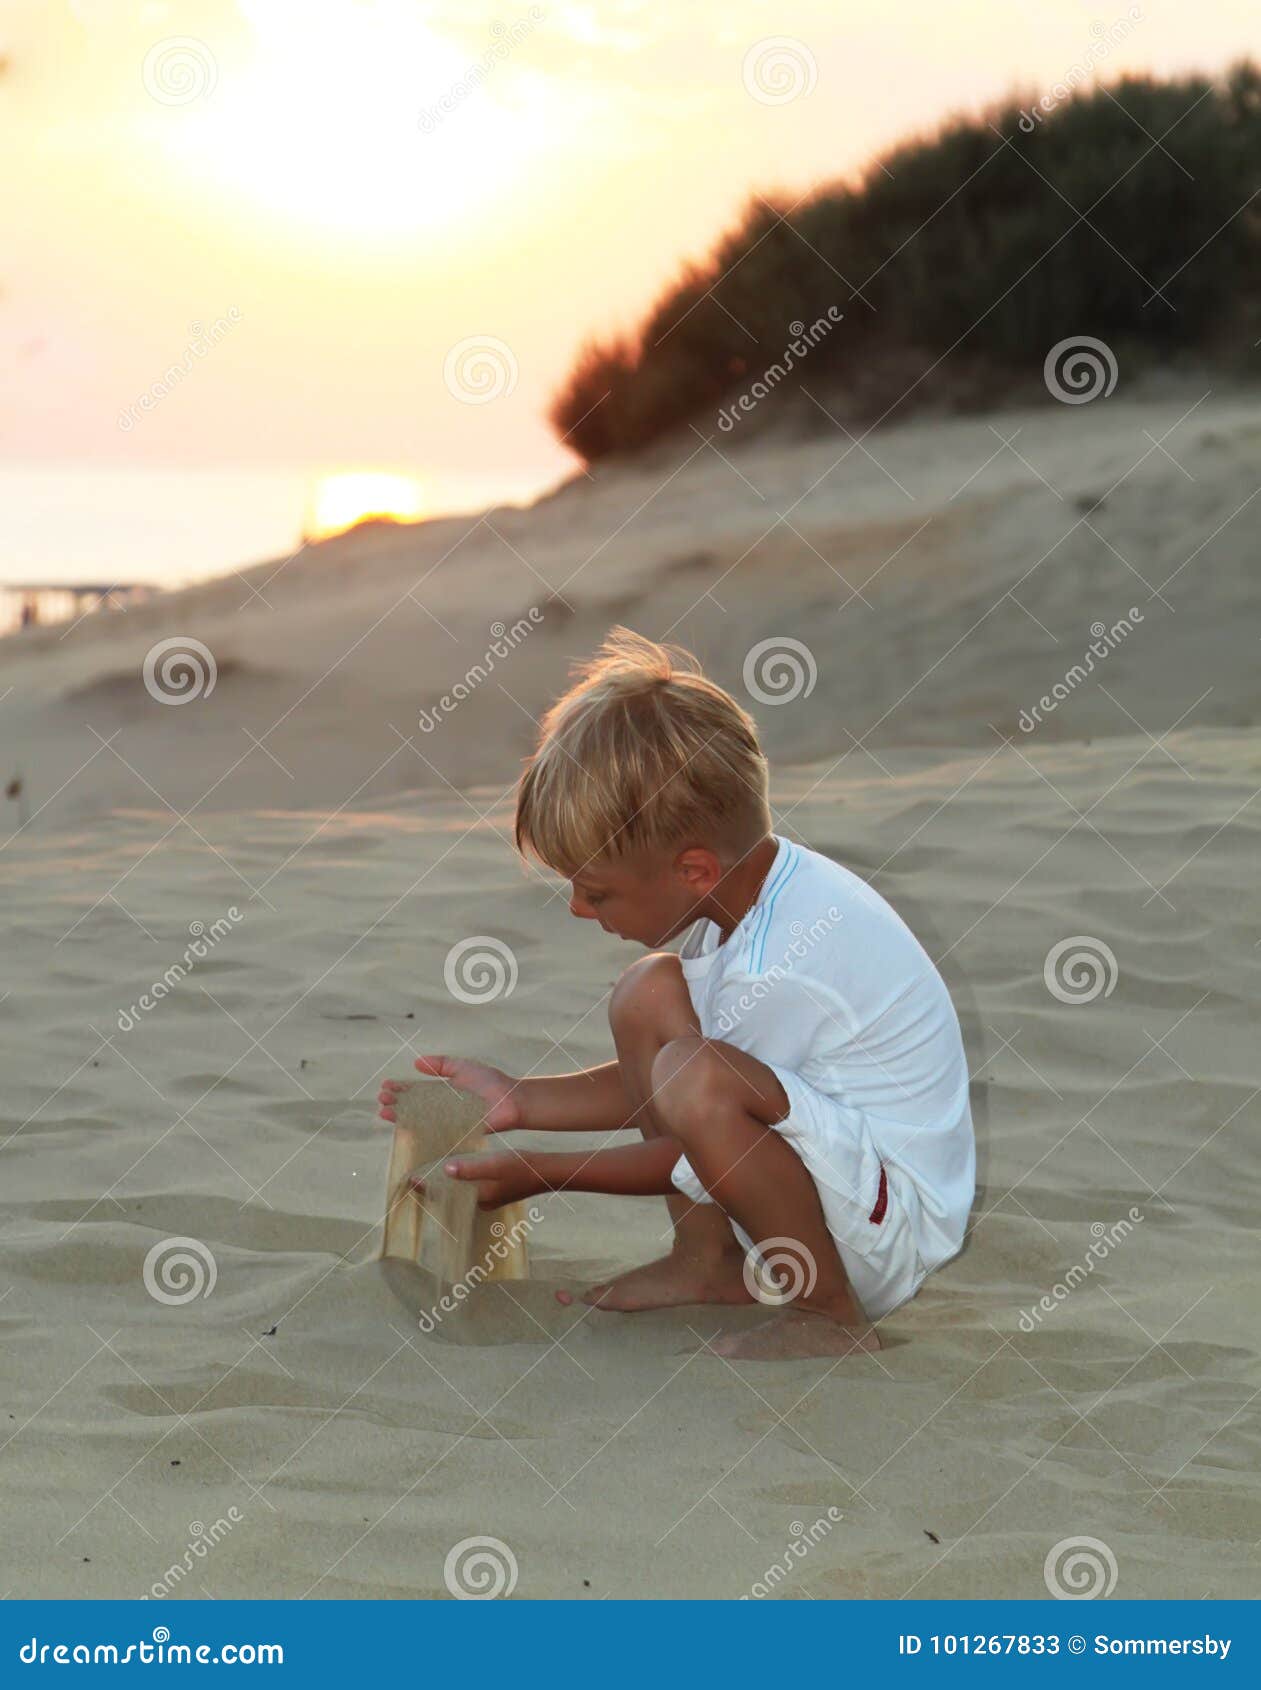 за голыми детьми на пляже фото 95